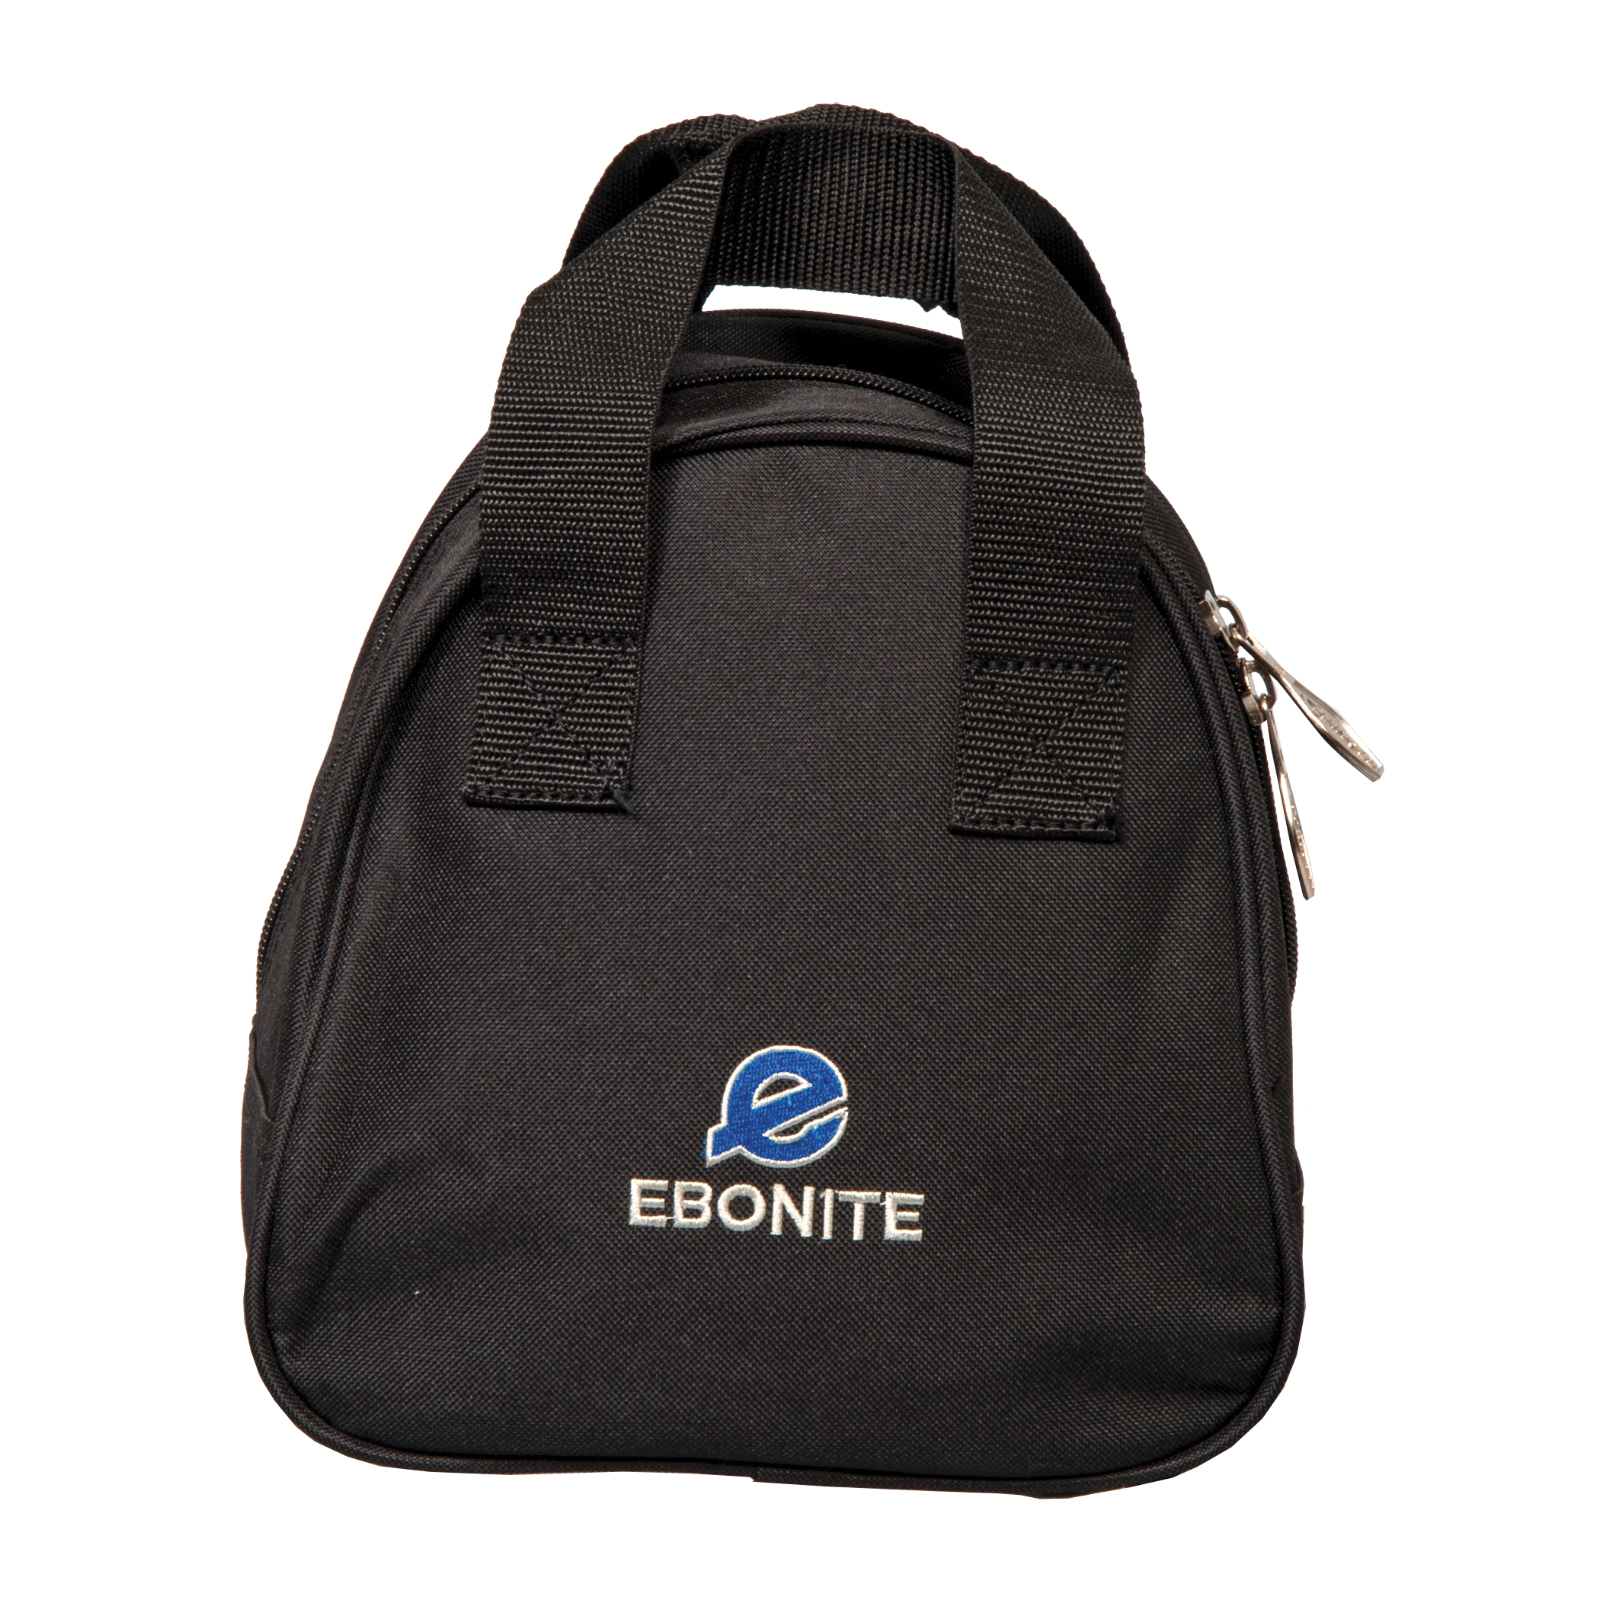 Ebonite Add-A-Bag